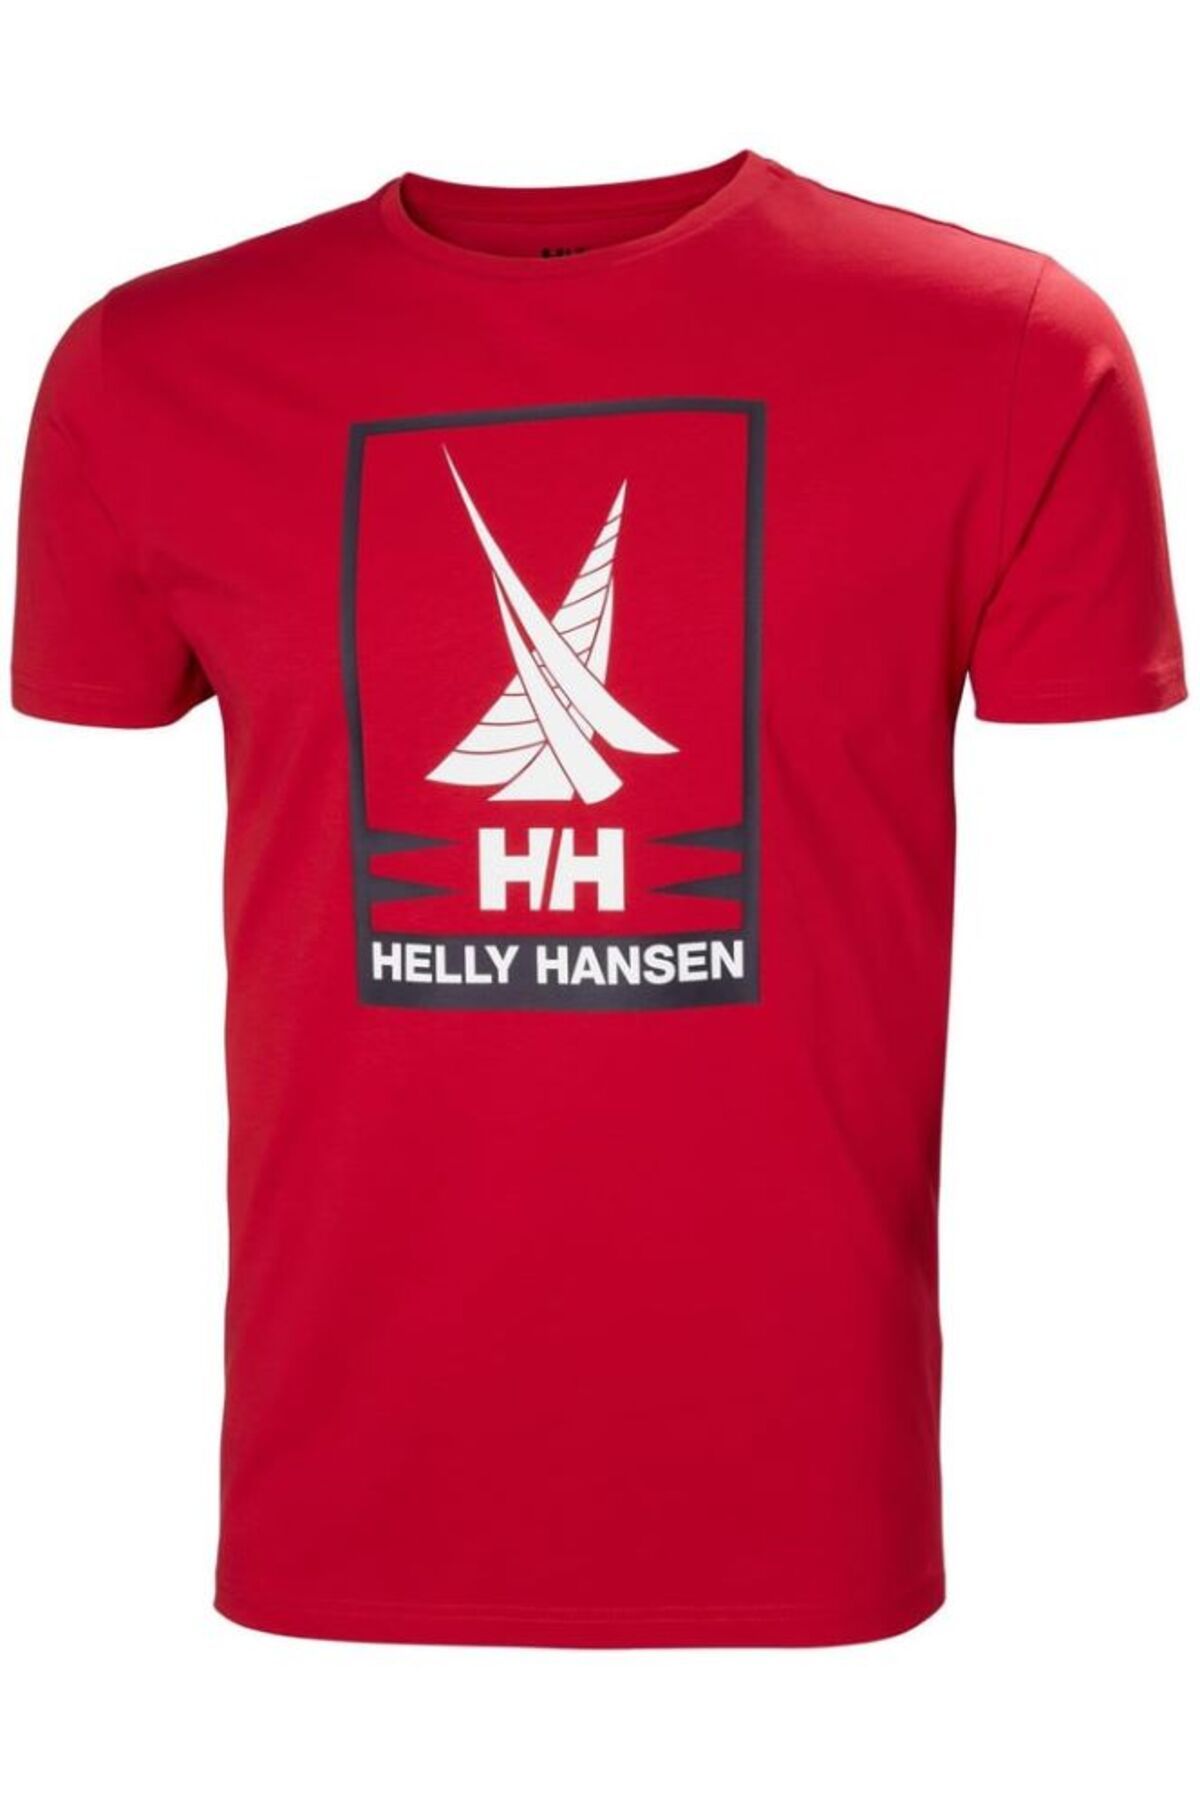 Helly Hansen Shoreline Erkek Tişört 2.0 Kırmızı HHA.34222.HHA.163